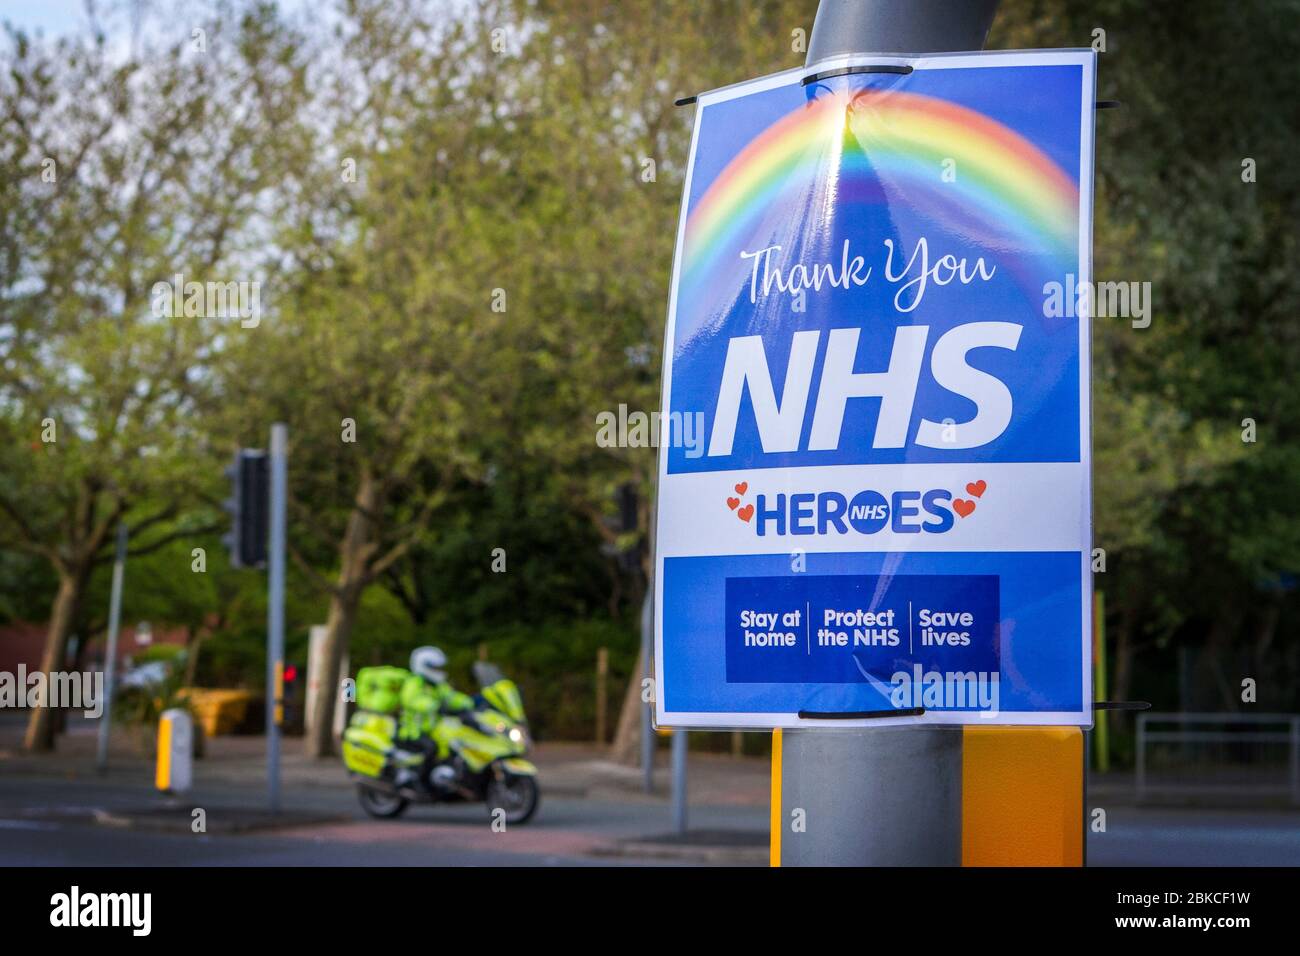 NHS coronavirus pandemia de gripe brote enfermedad muerte desastre crisis covid-19; Rainbow signos de apoyo en Southport, Reino Unido Foto de stock